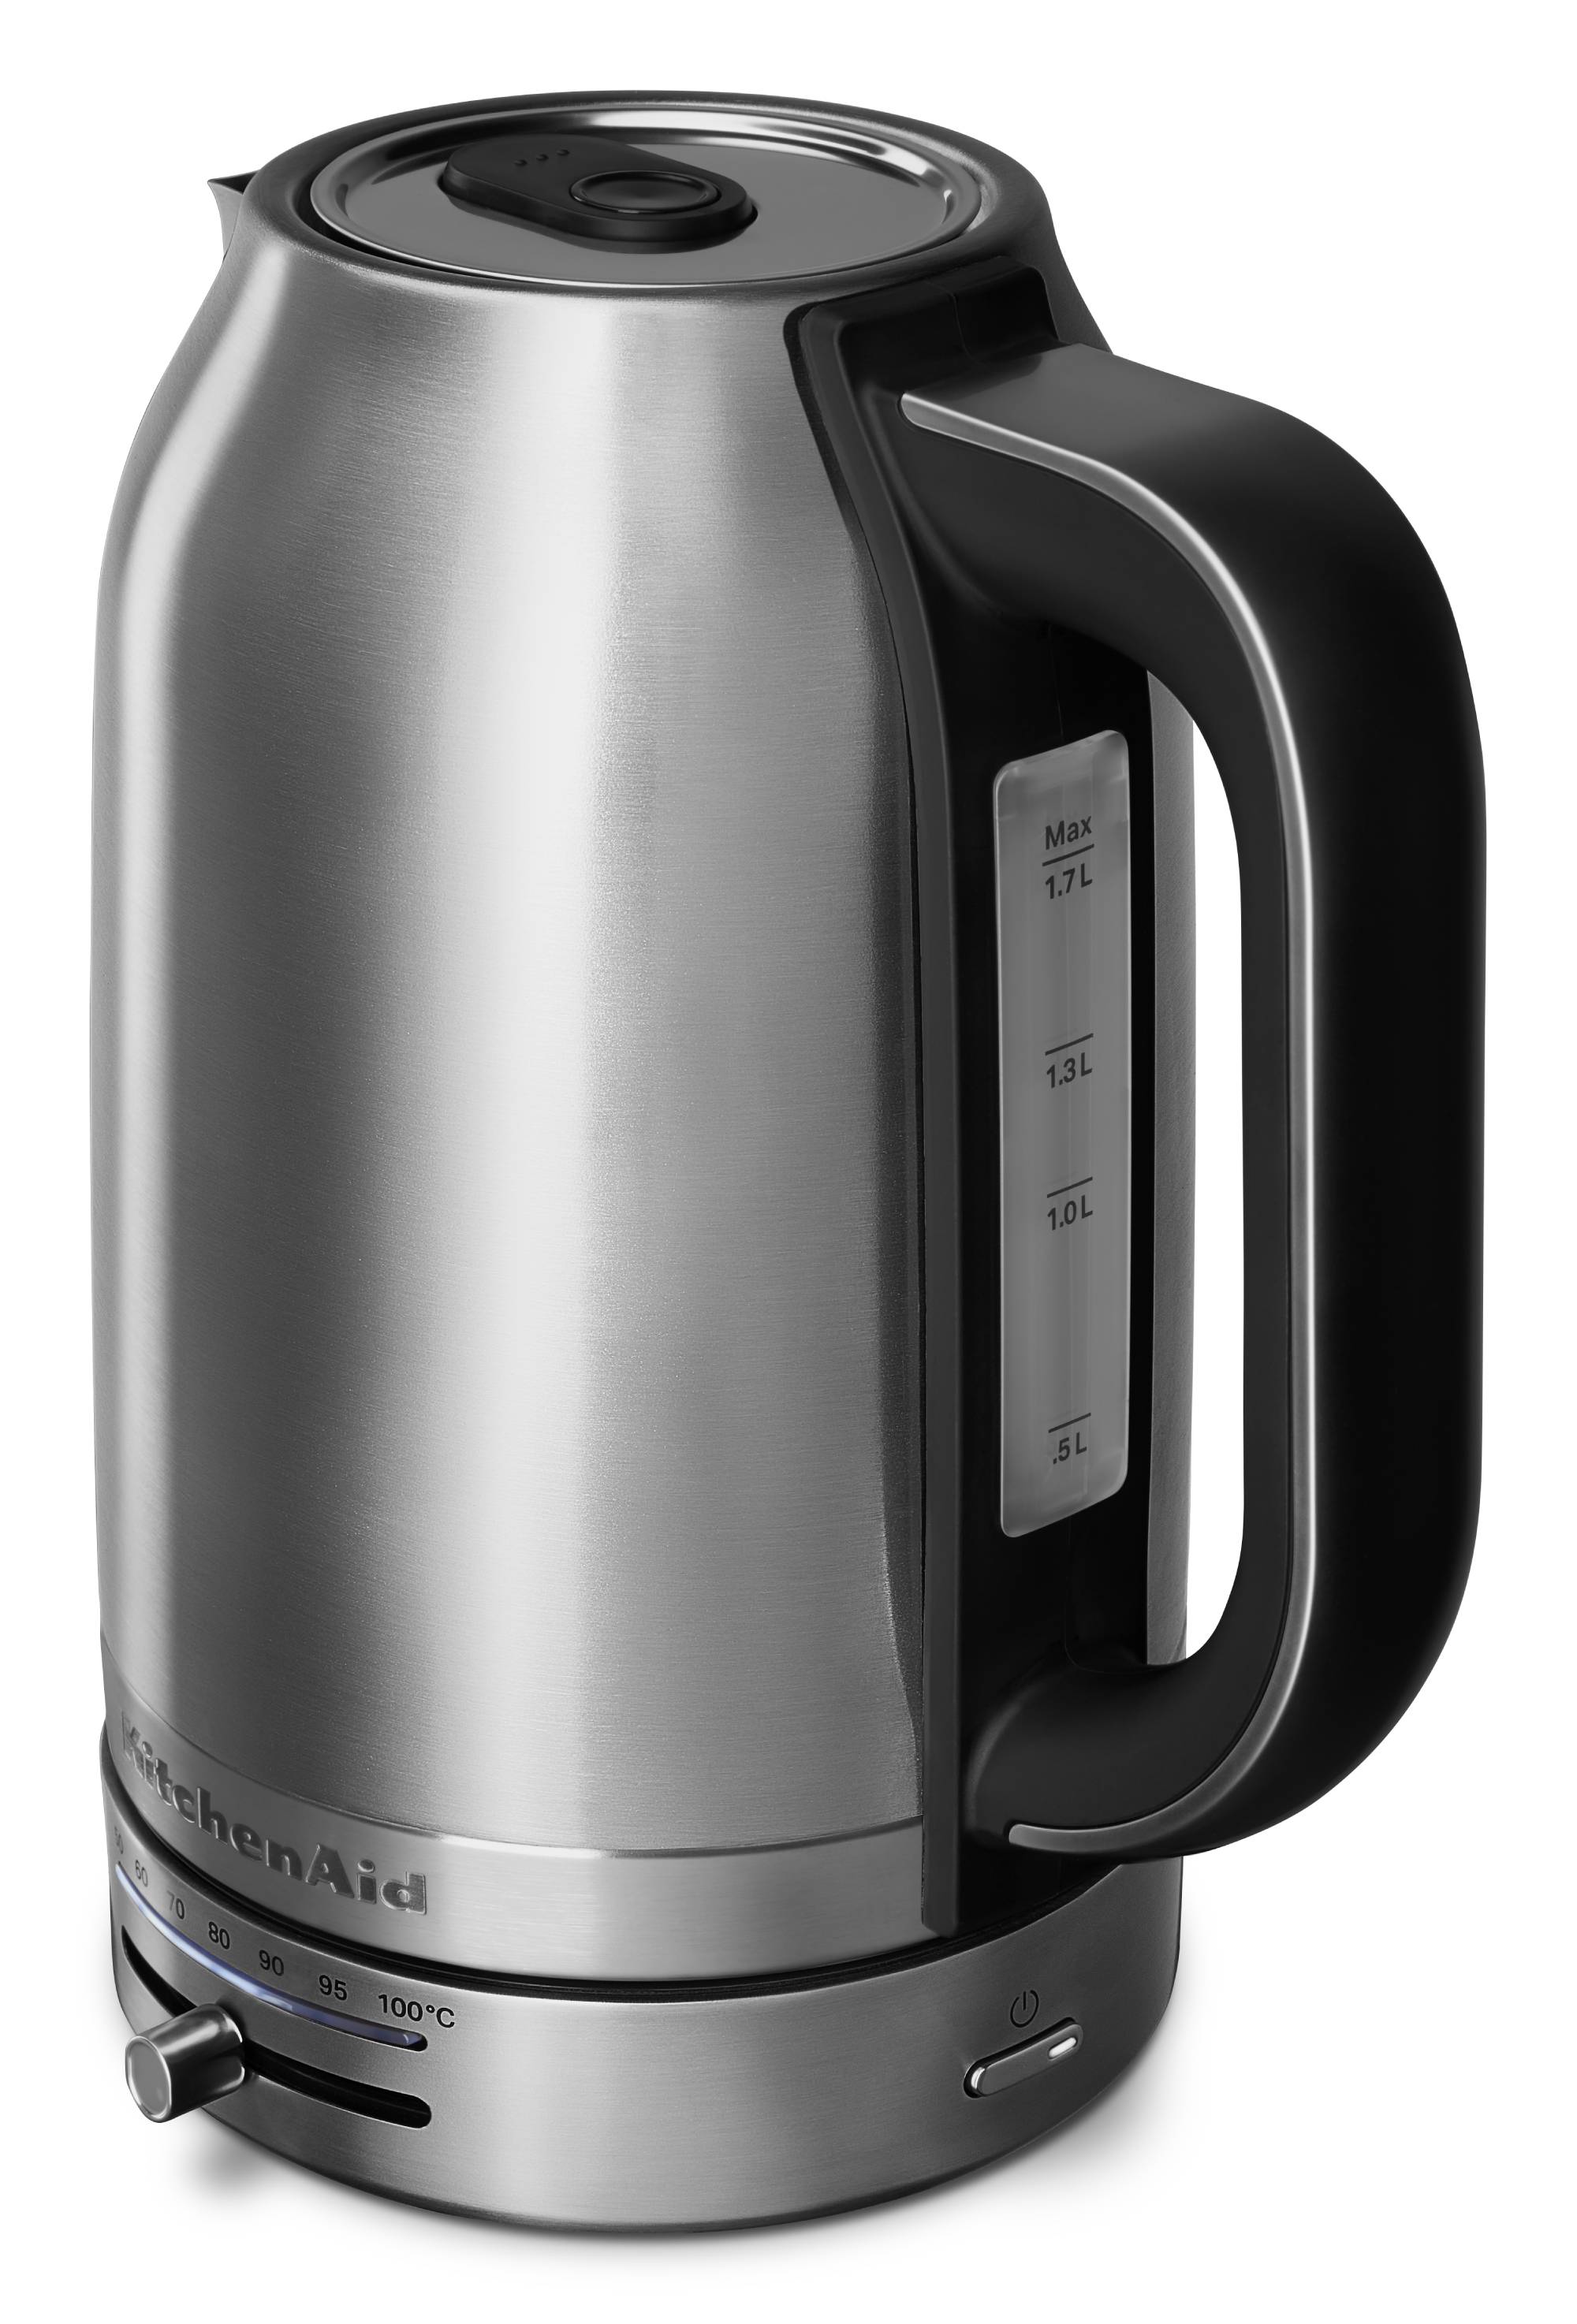 KitchenAid Toaster - Wasserkocher mit Temperaturregelung Set - Edelstahl